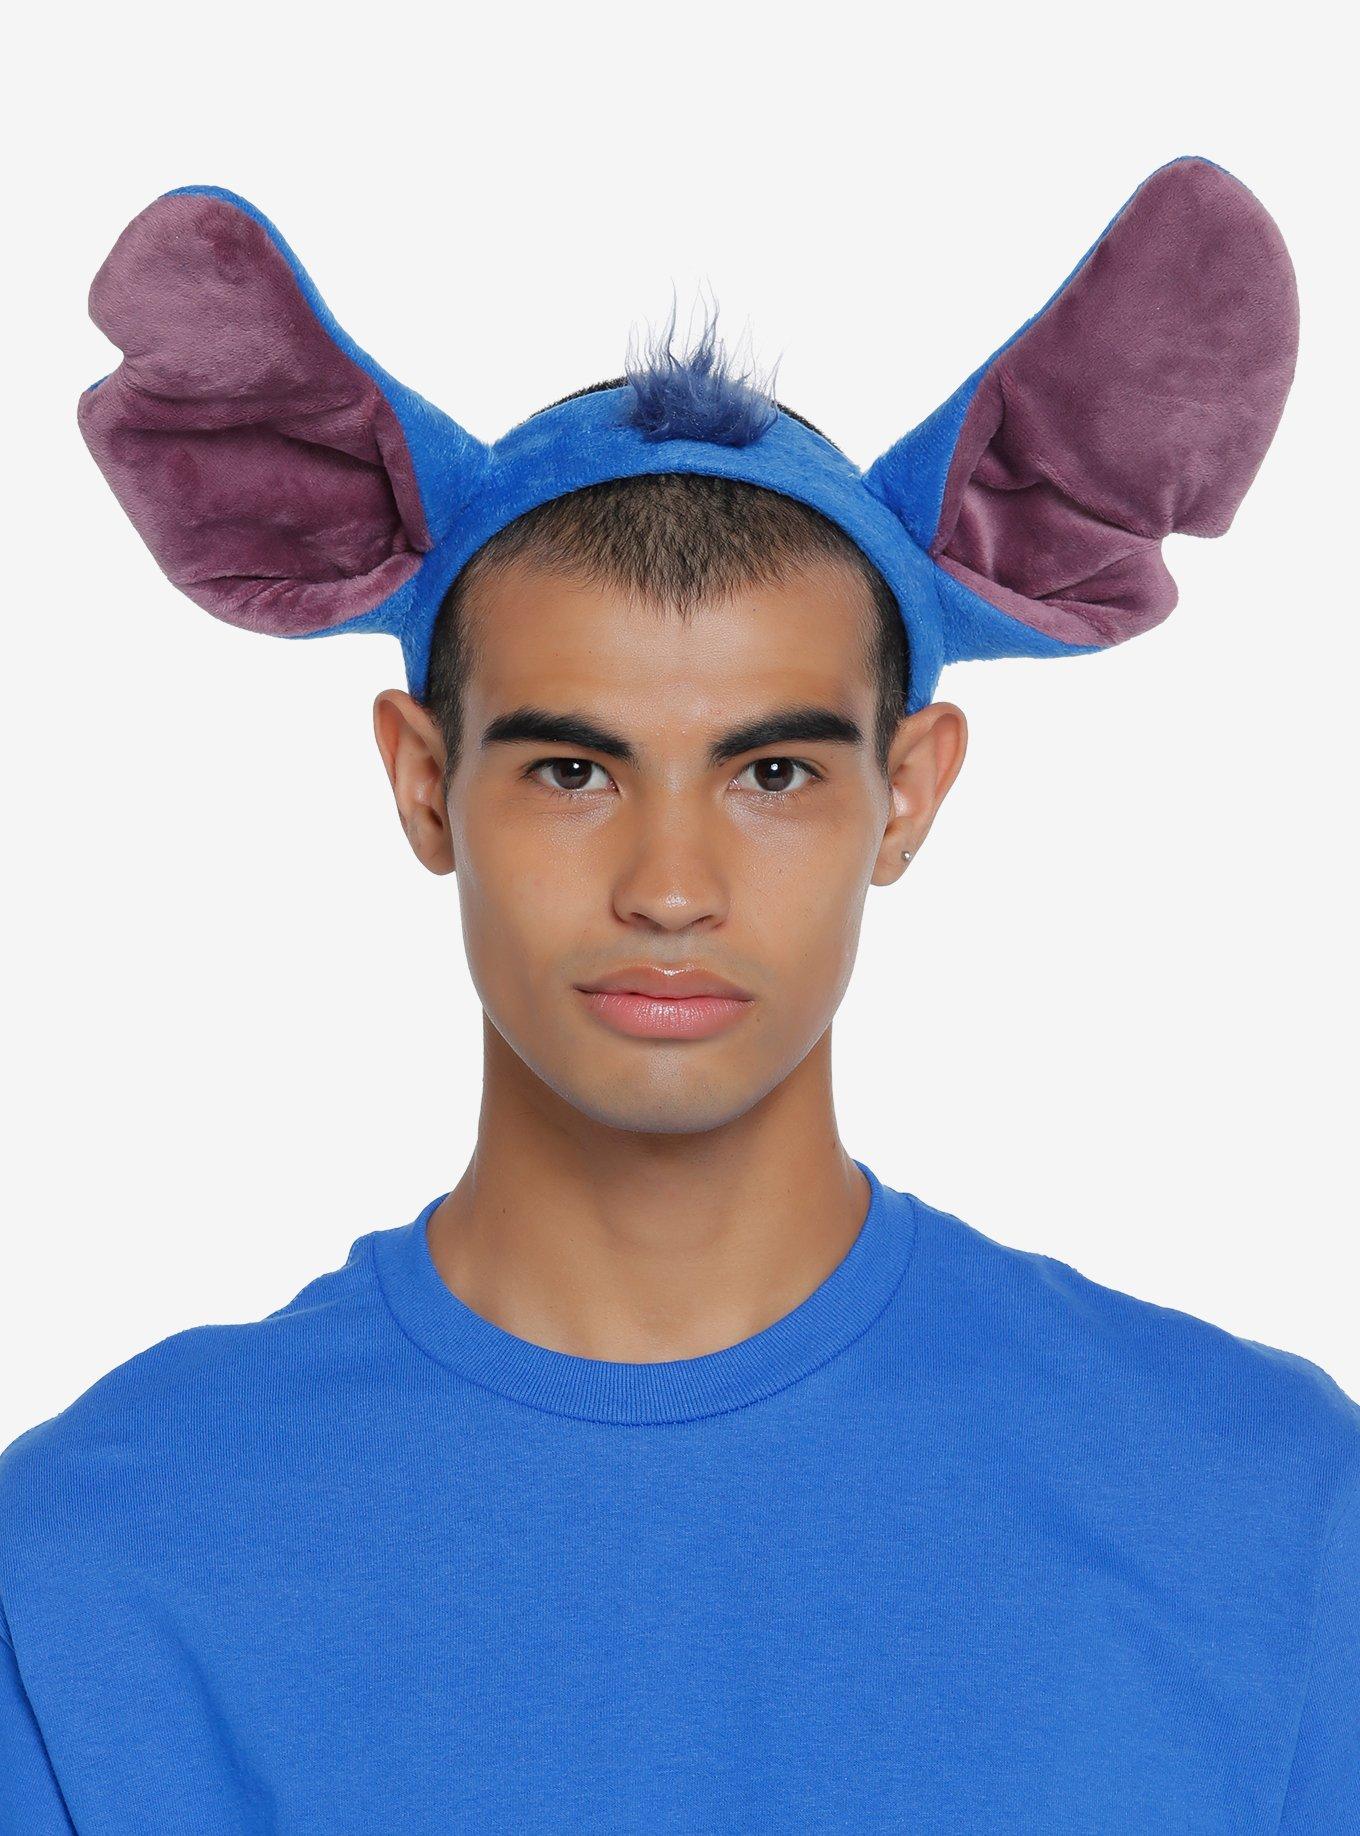 Disney Lilo & Stitch Stitch Ears Headband